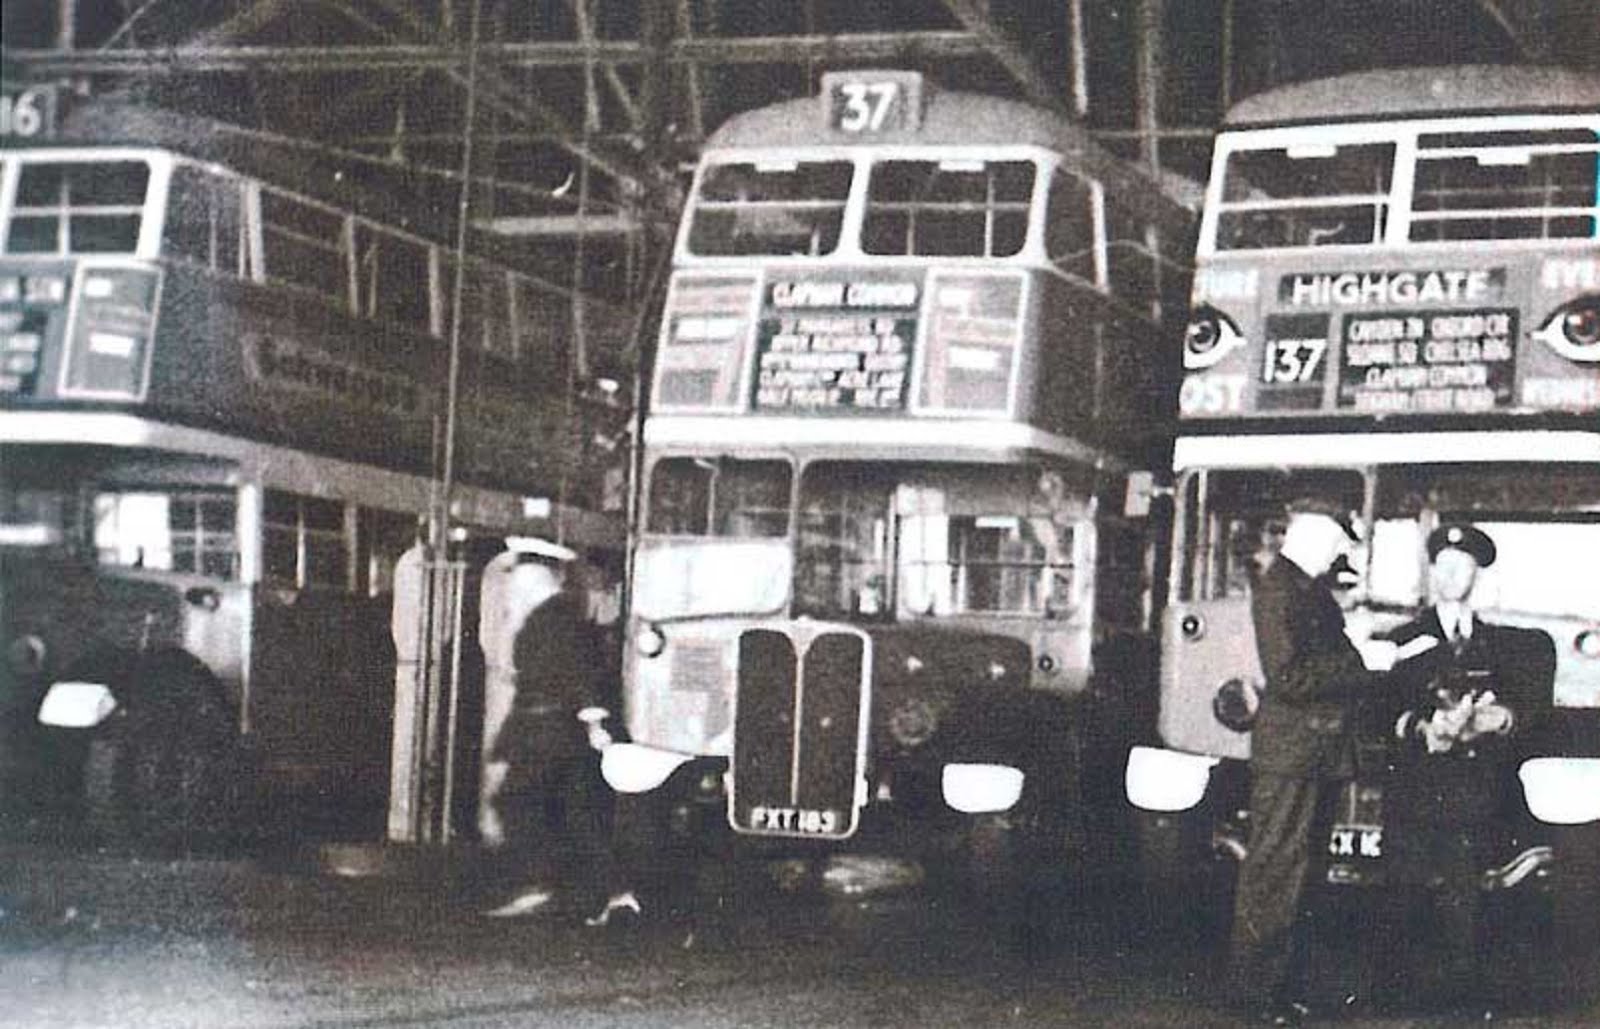 British bus garage. 1950s